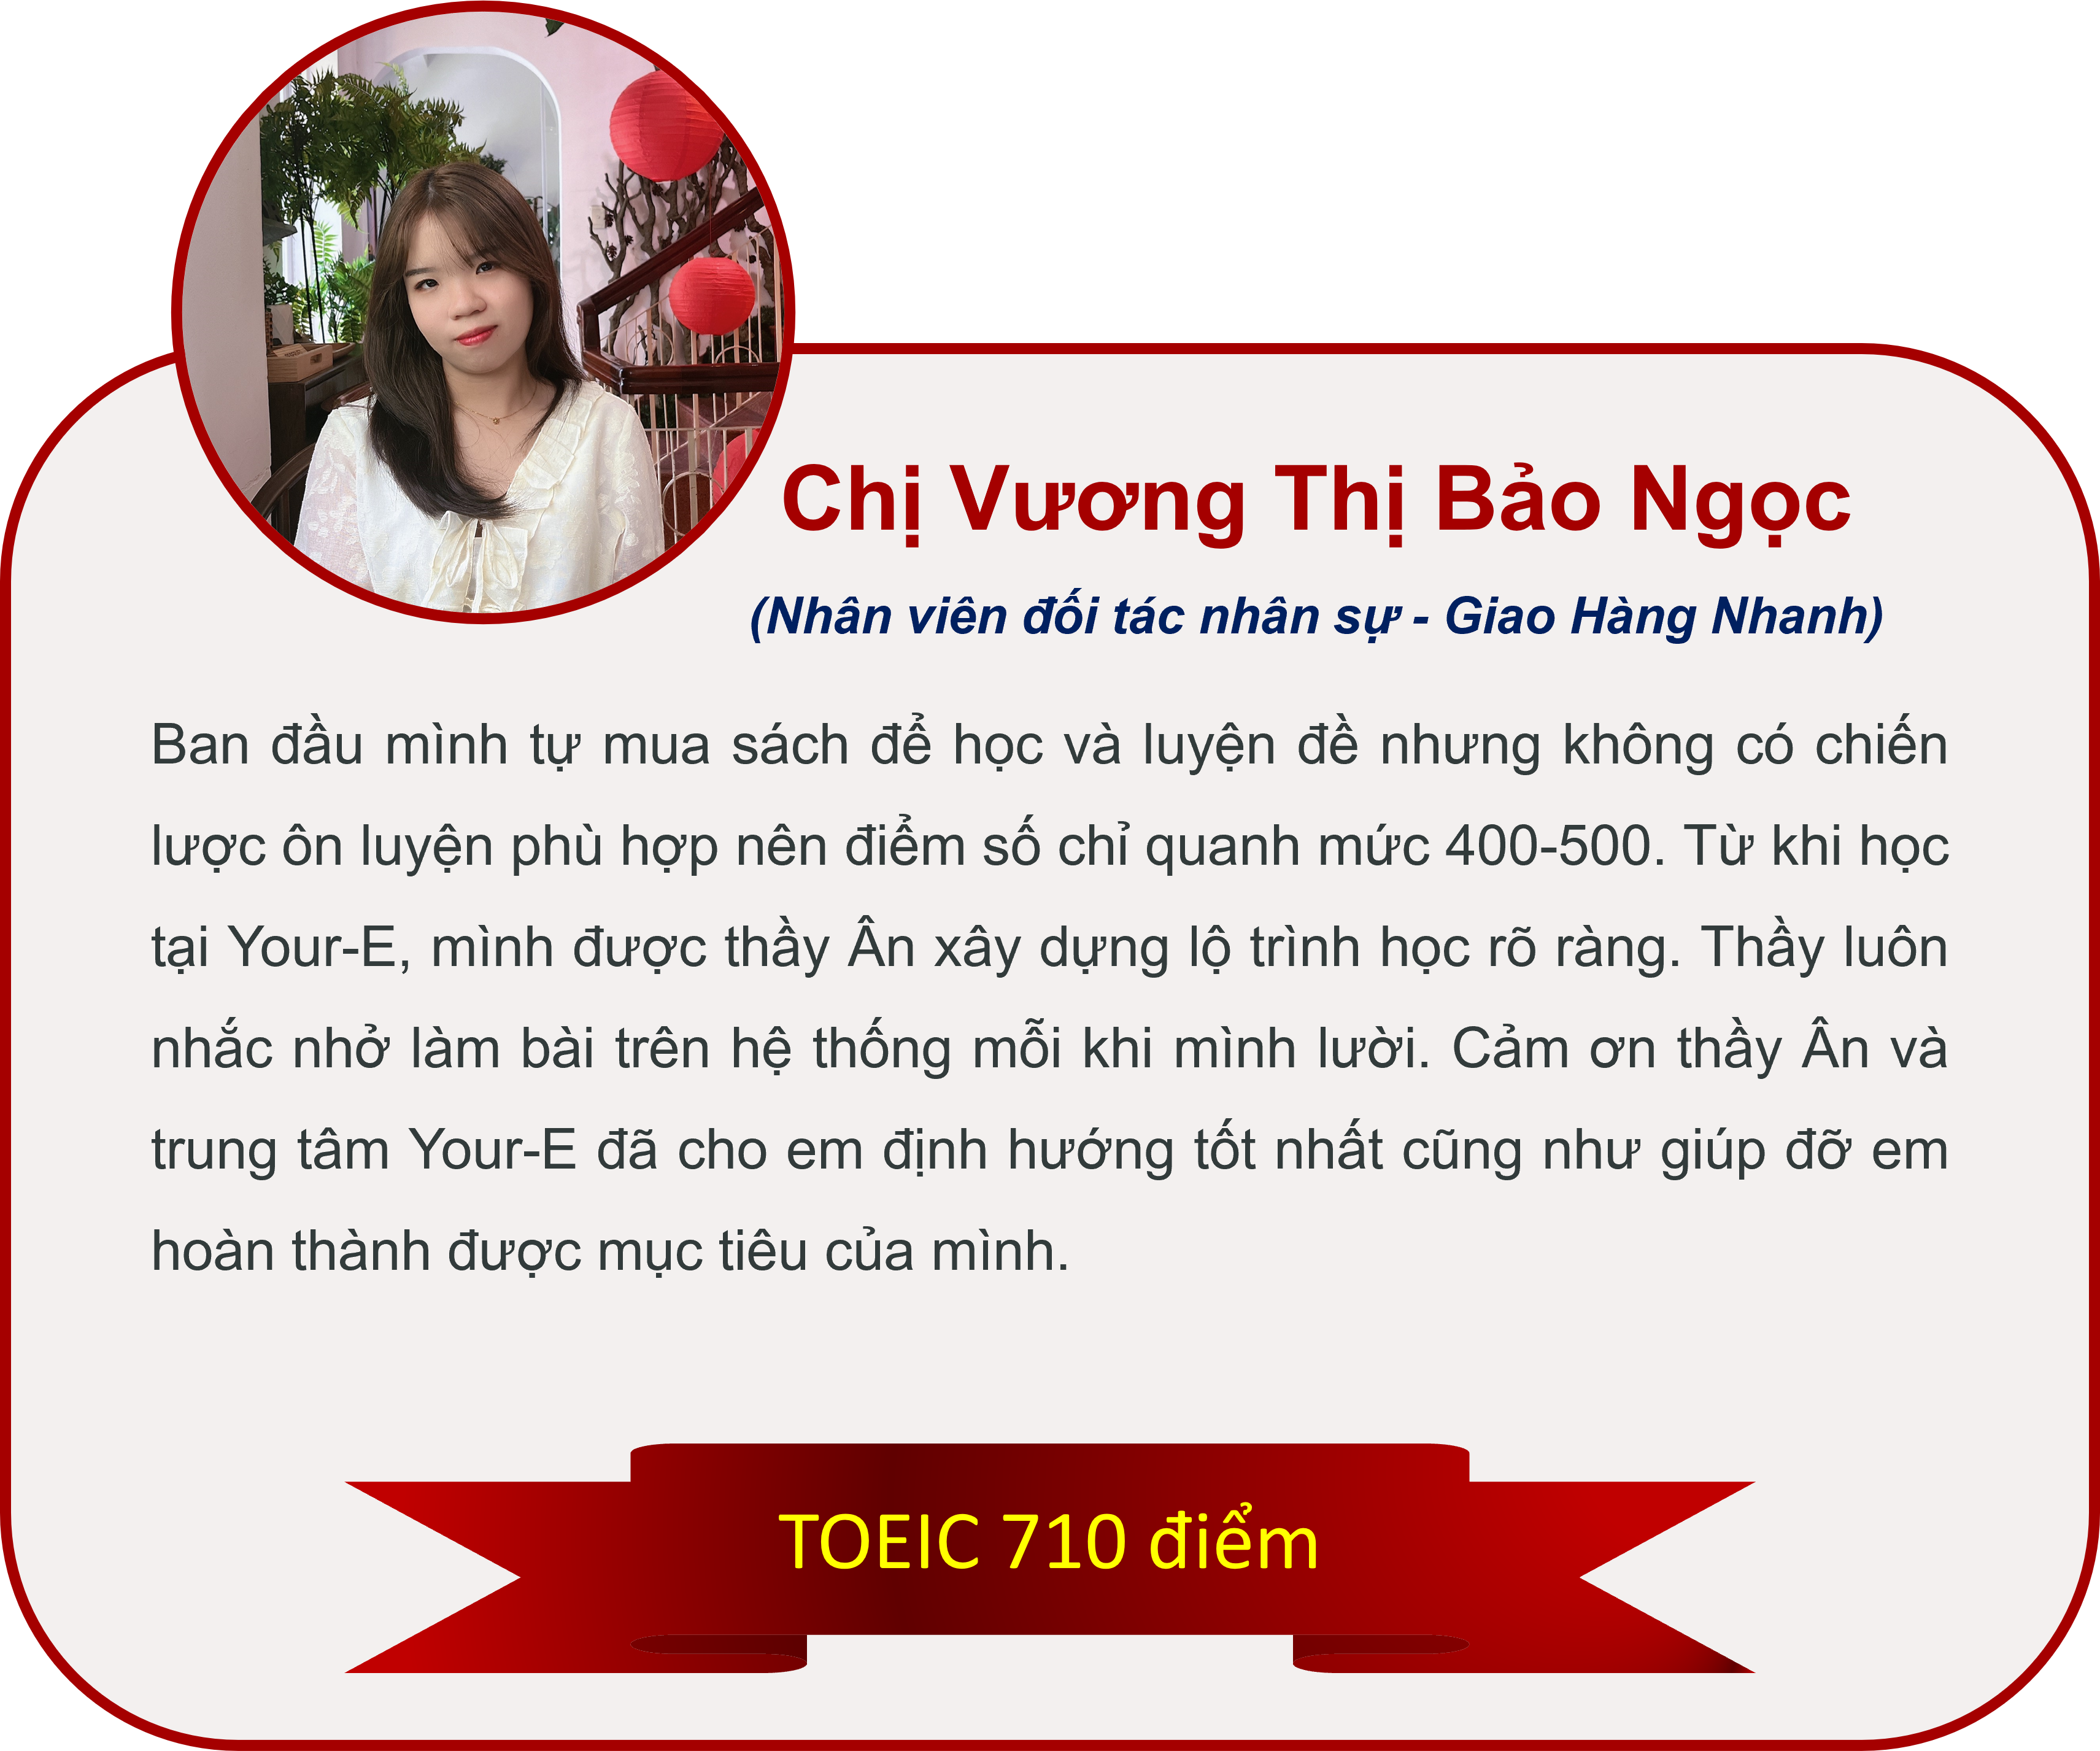 Vuong Thi Bao Ngoc hv TOEIC